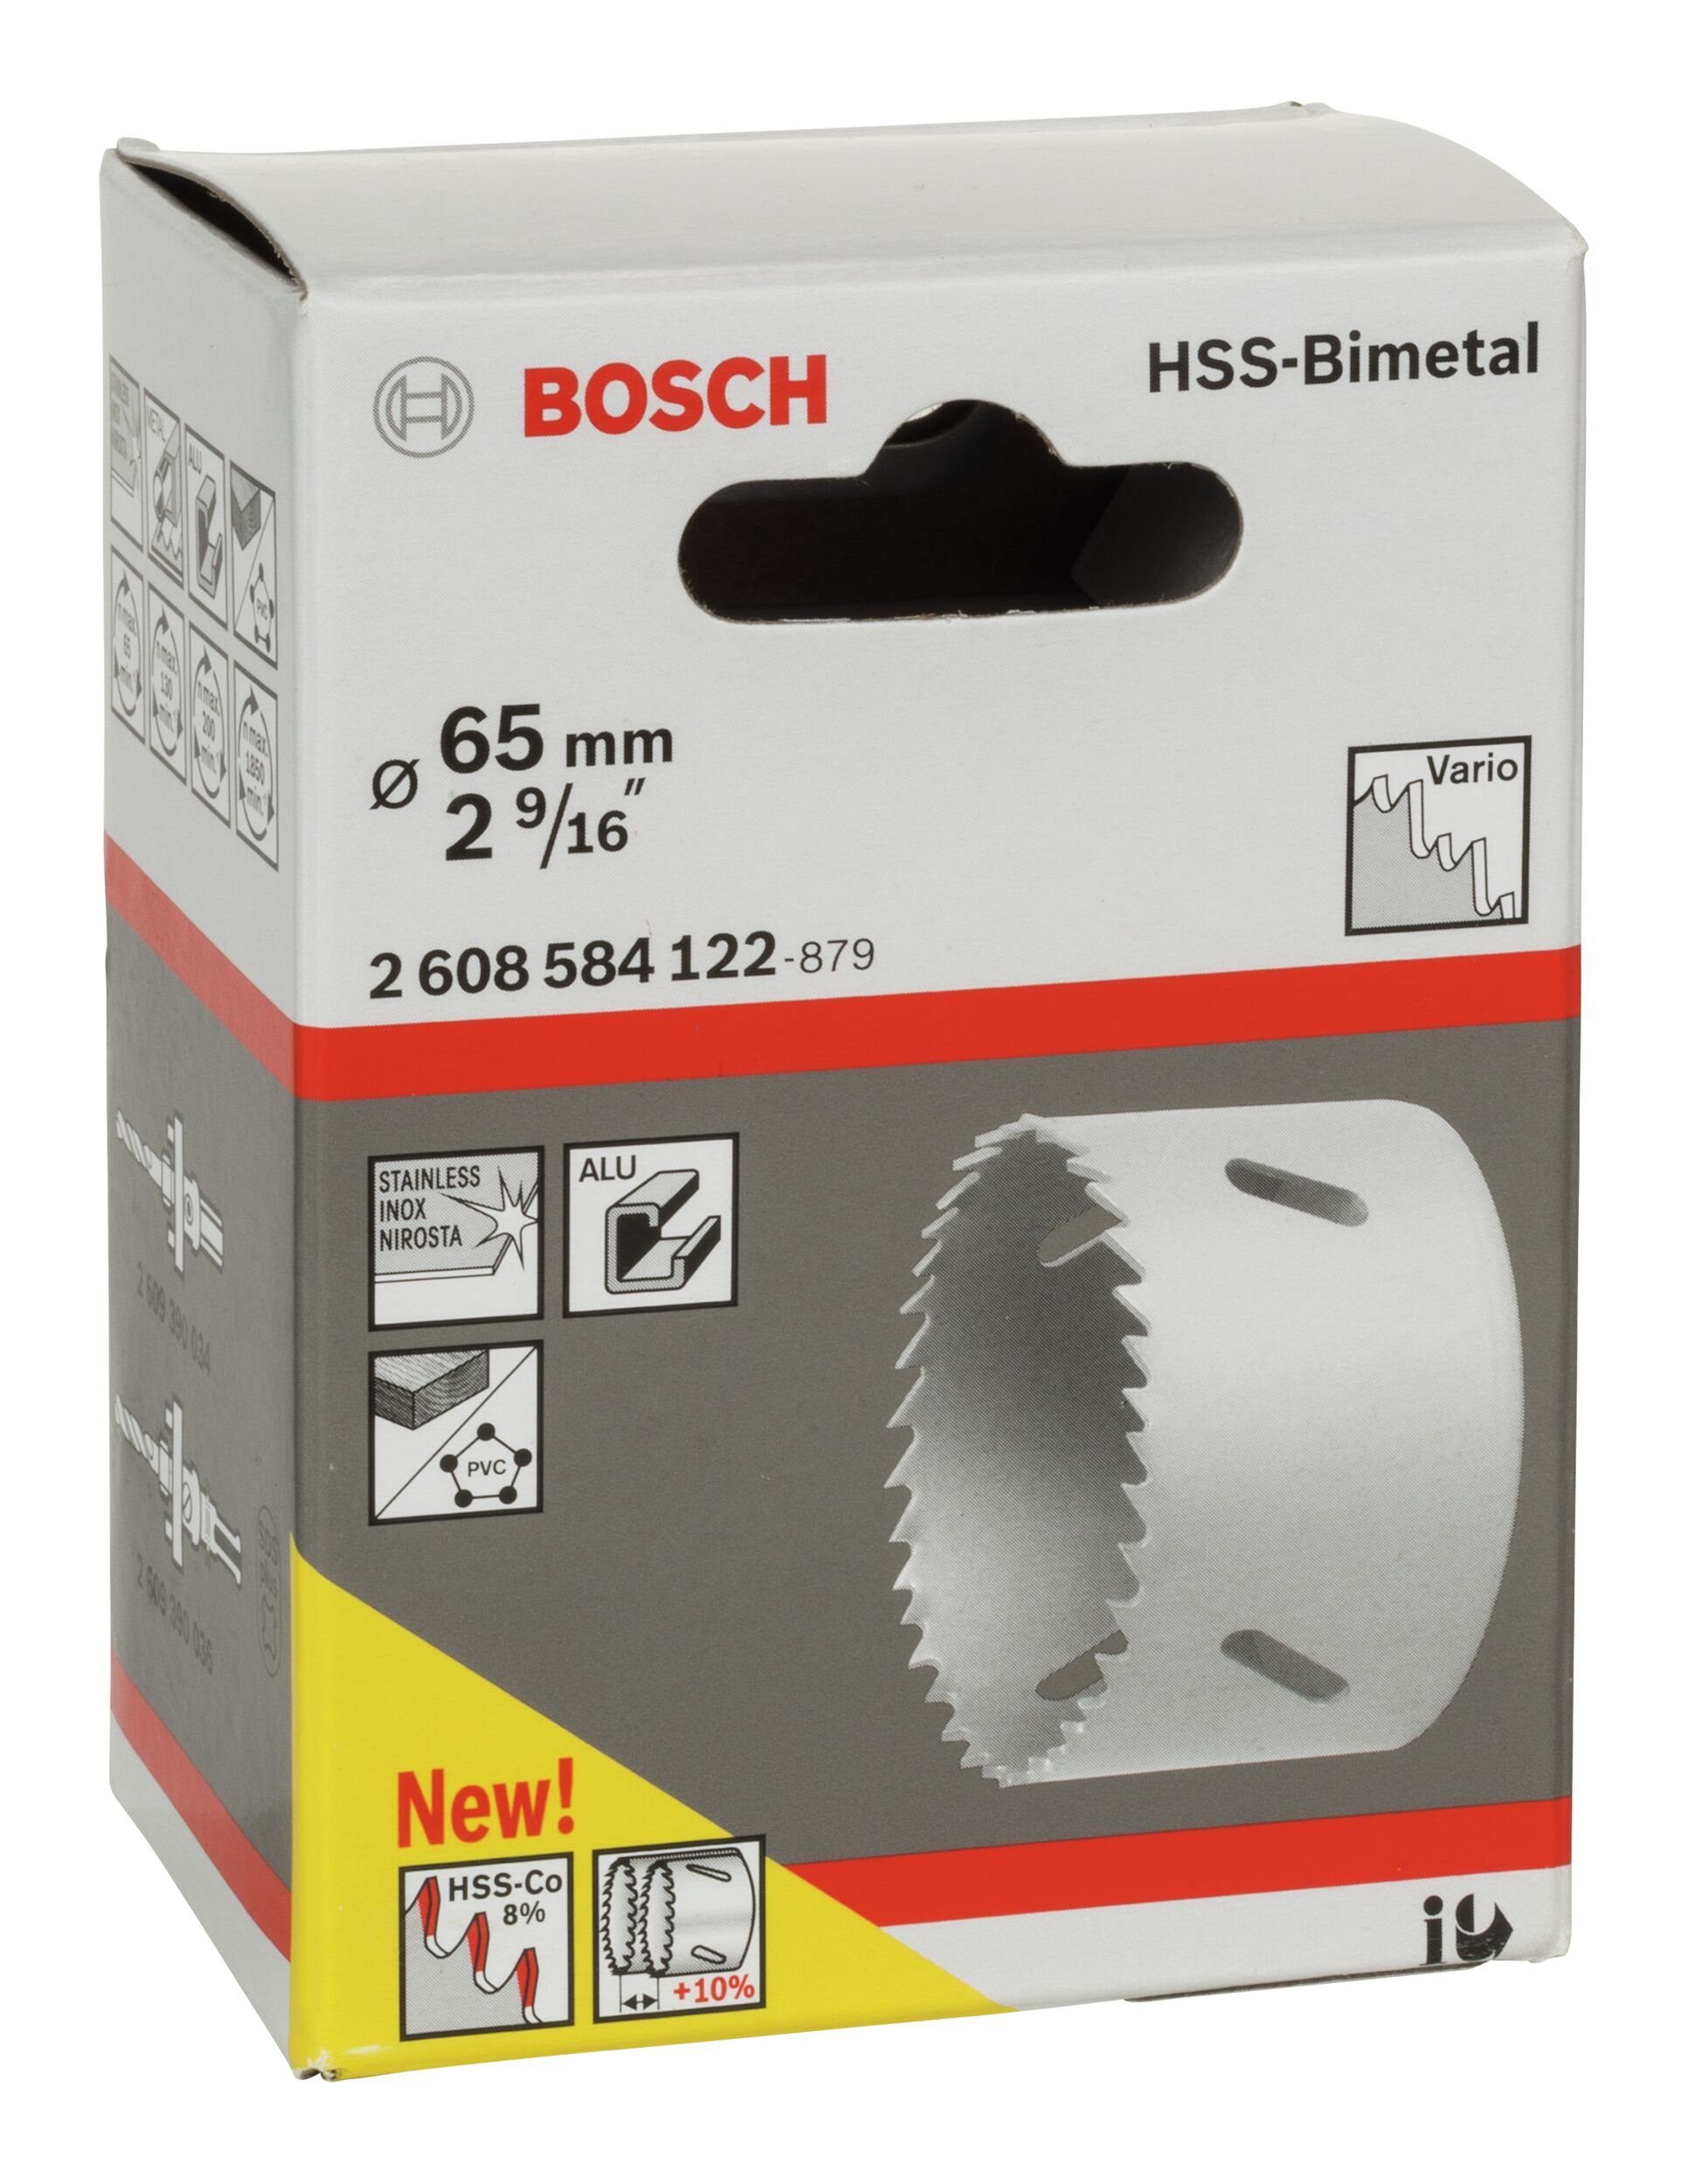 / HSS-Bimetall für 2 BOSCH 65 Lochsäge, 9/16" - Standardadapter mm, Ø